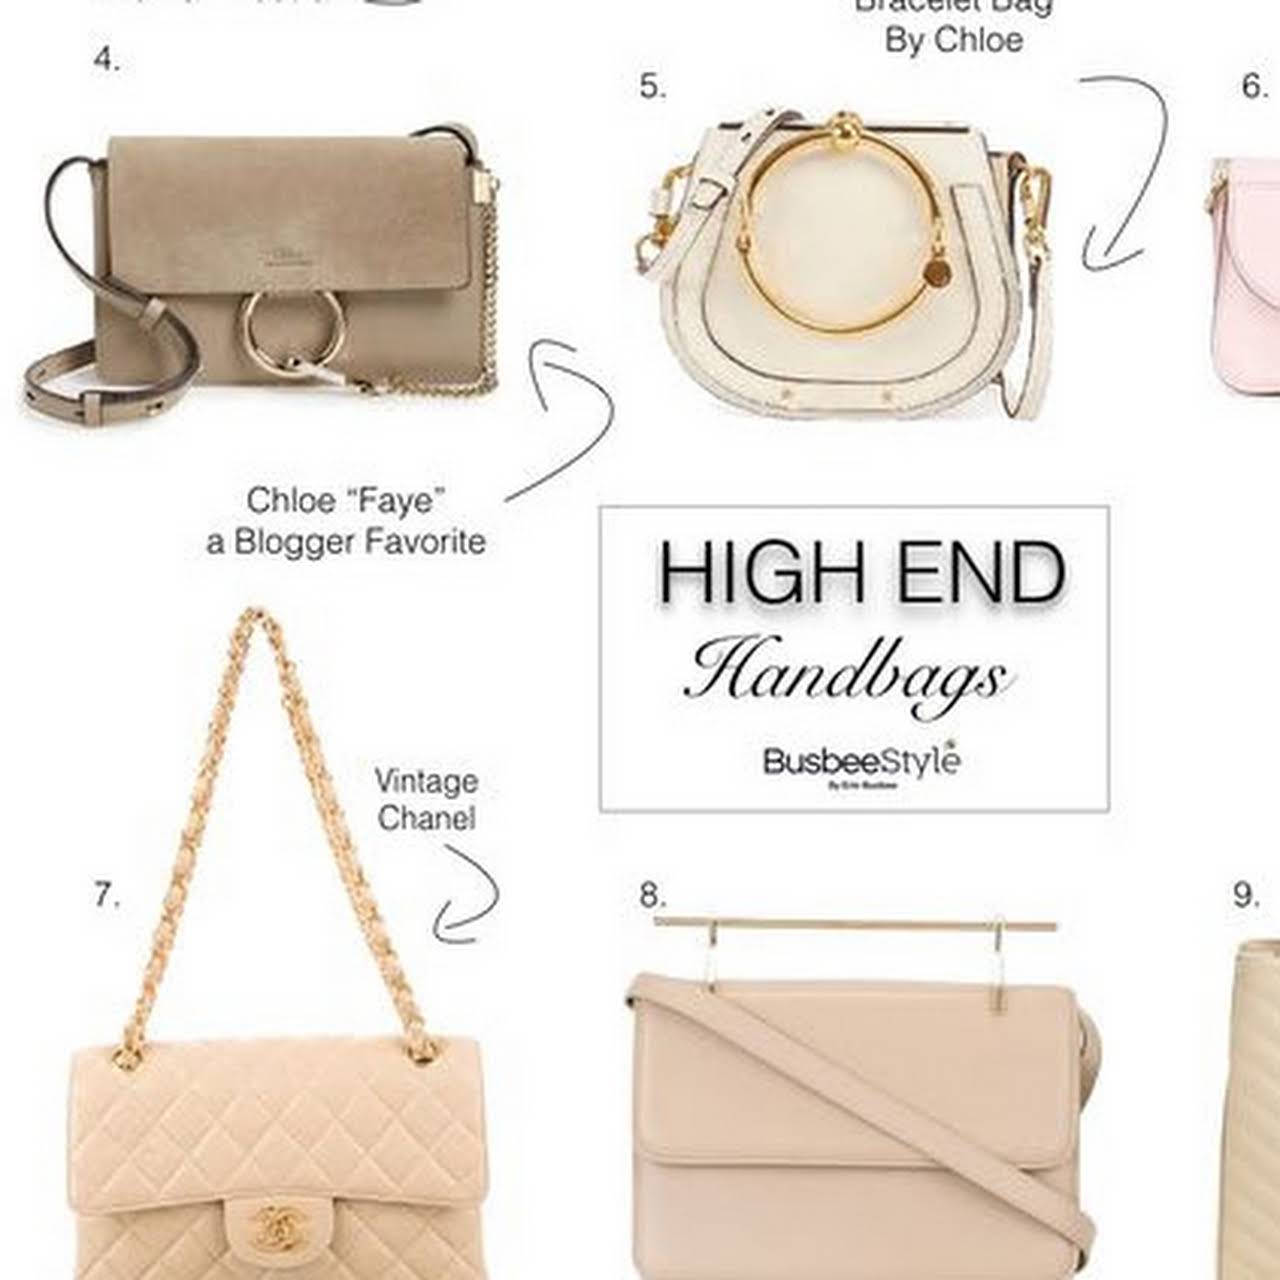 Dream Authentic Luxury Designer Bags - Buy and sell authentic designer handbags in the premium ...